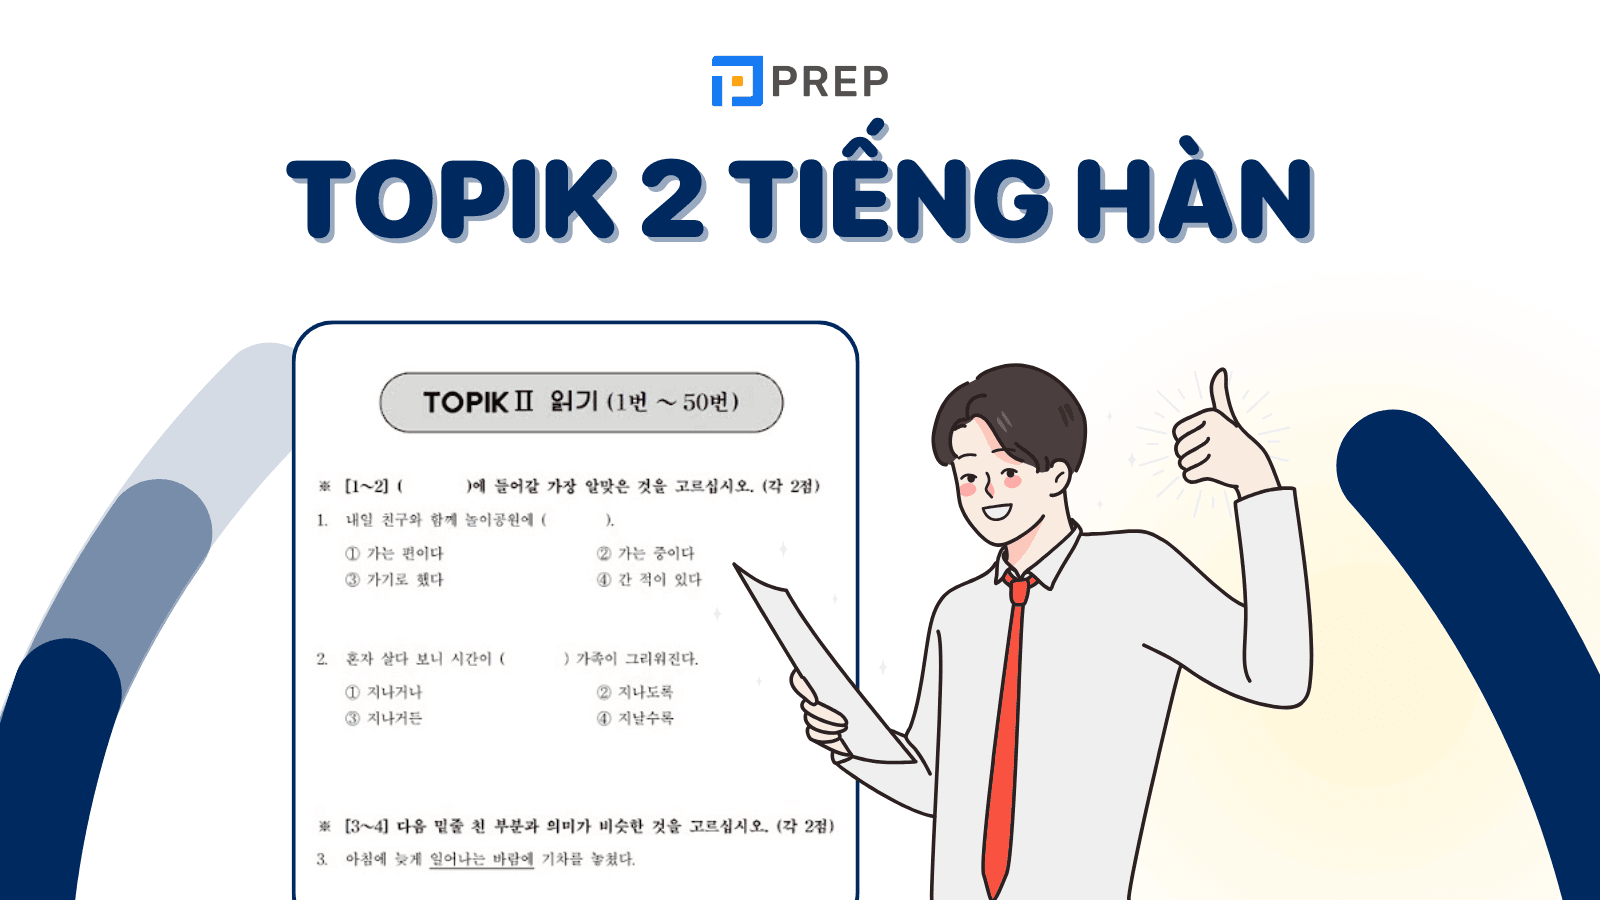 TOPIK 2 là gì? Thông tin chi tiết về trình độ TOPIK 2 tiếng Hàn